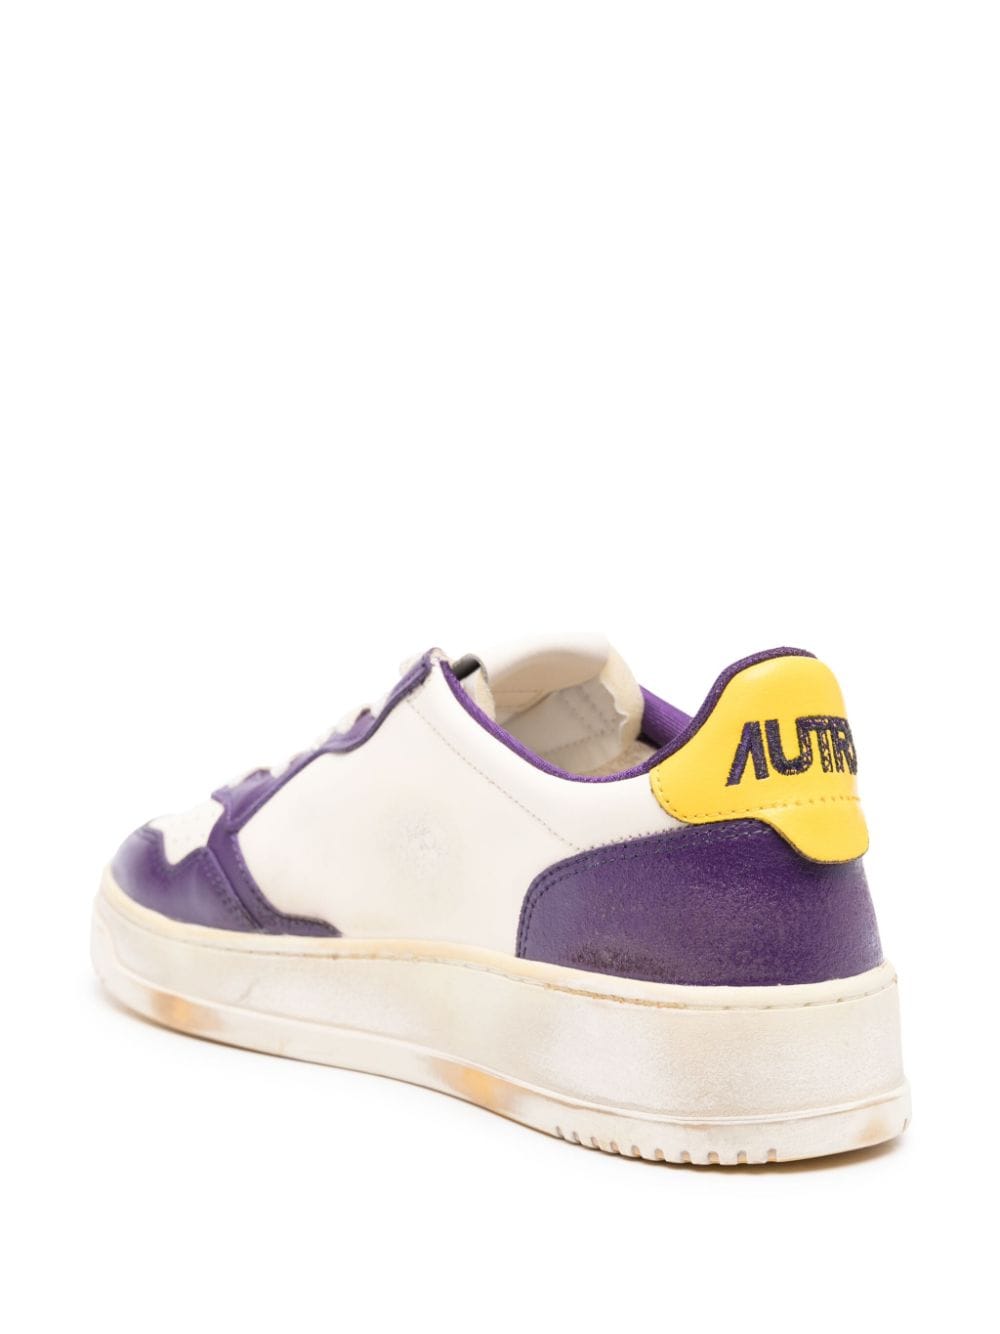 Sneaker supervintage blanche et violette